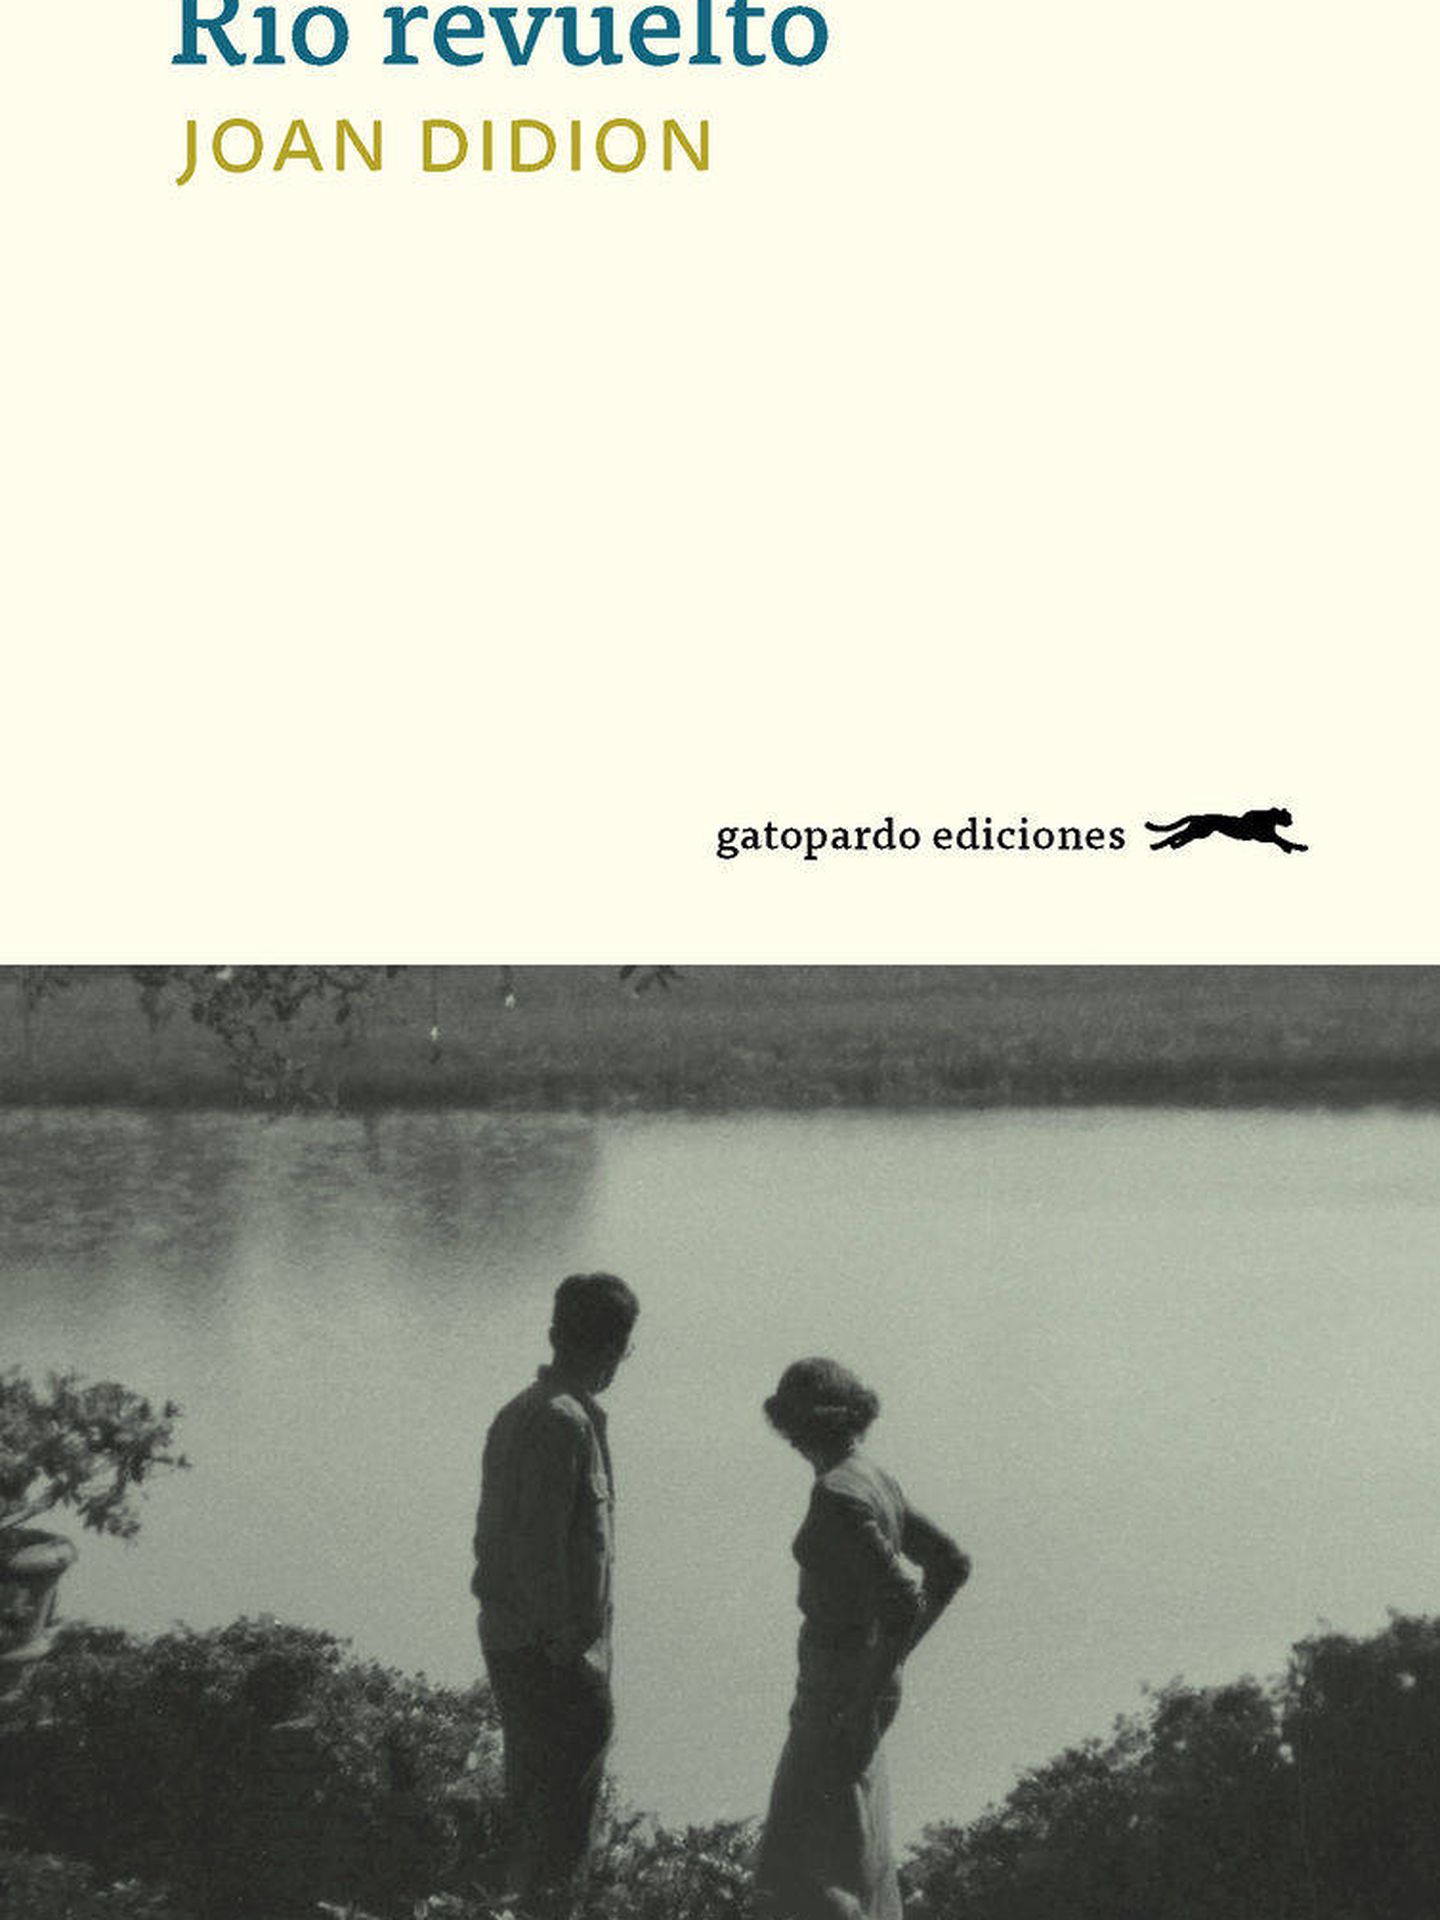 'Río revuelto', Gatopardo Ediciones.